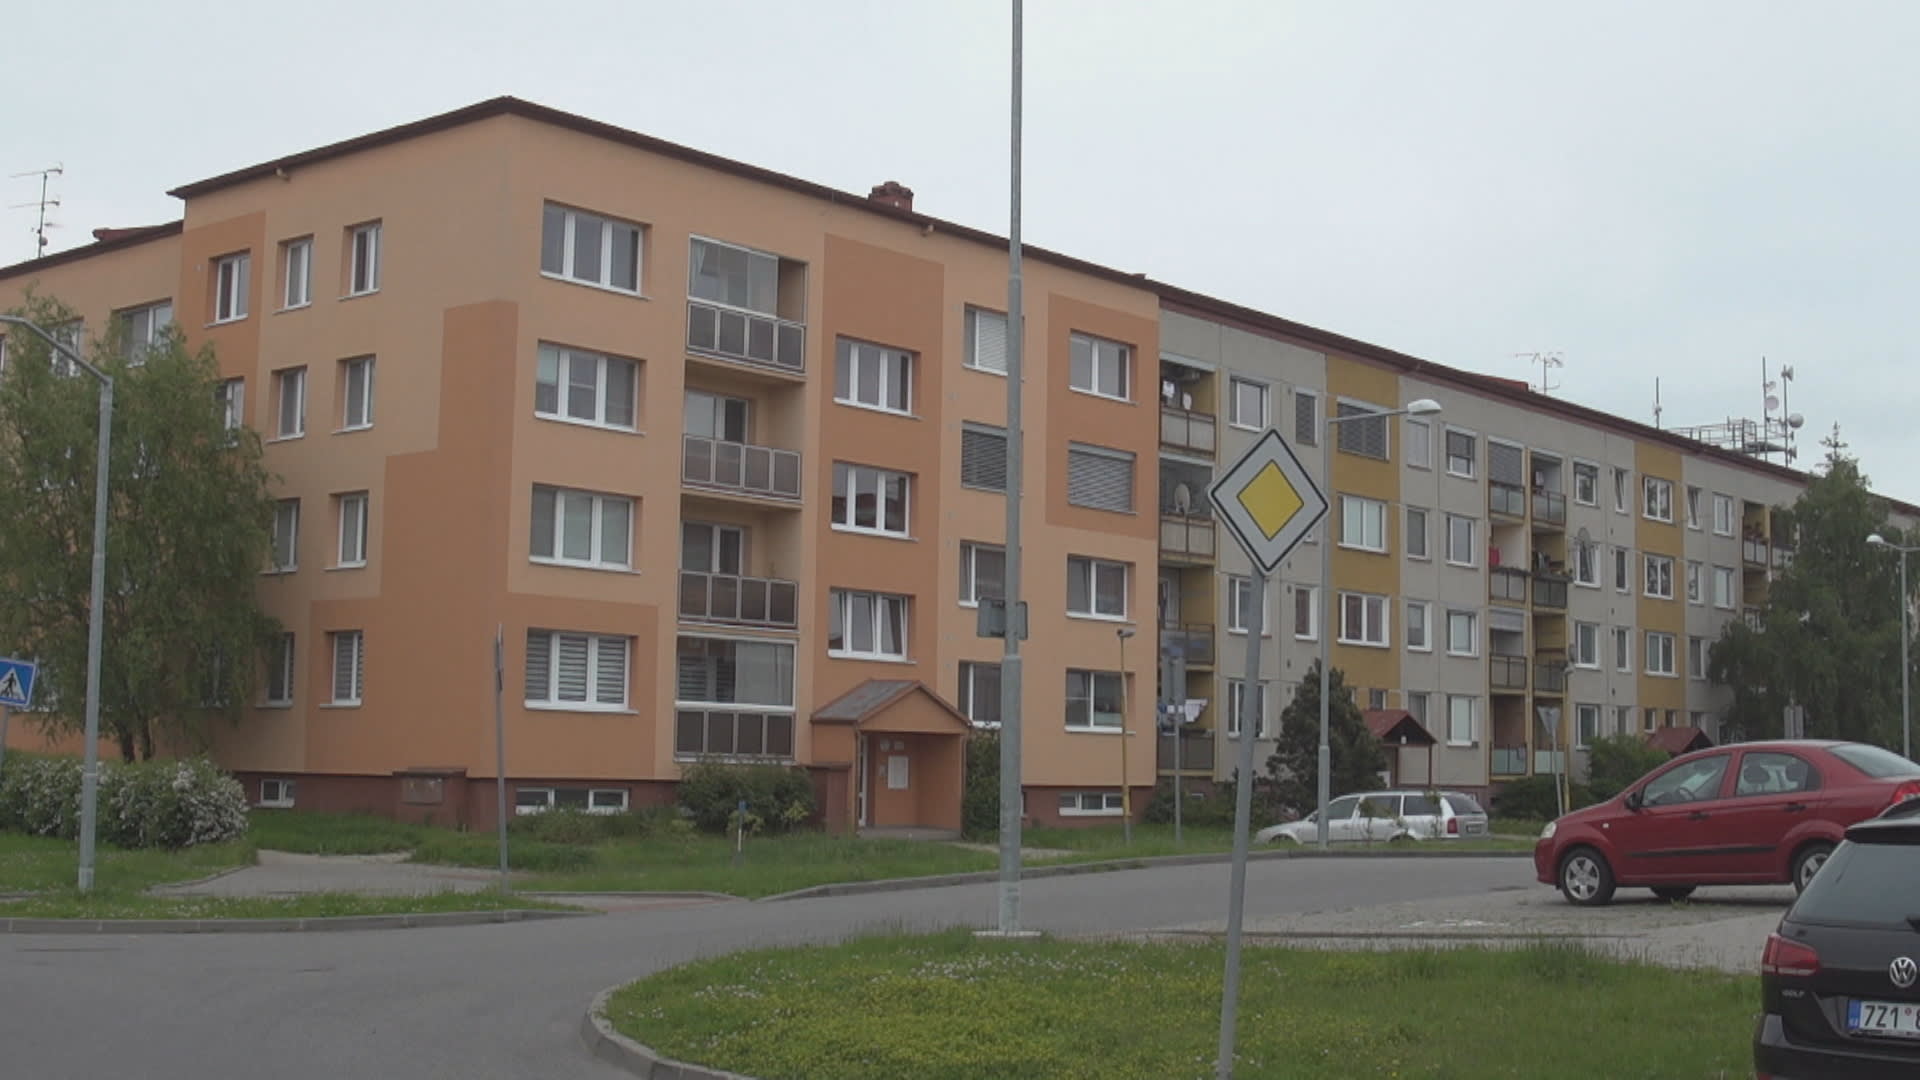 Byty jsou v některých regionech Česka dražší než domy.